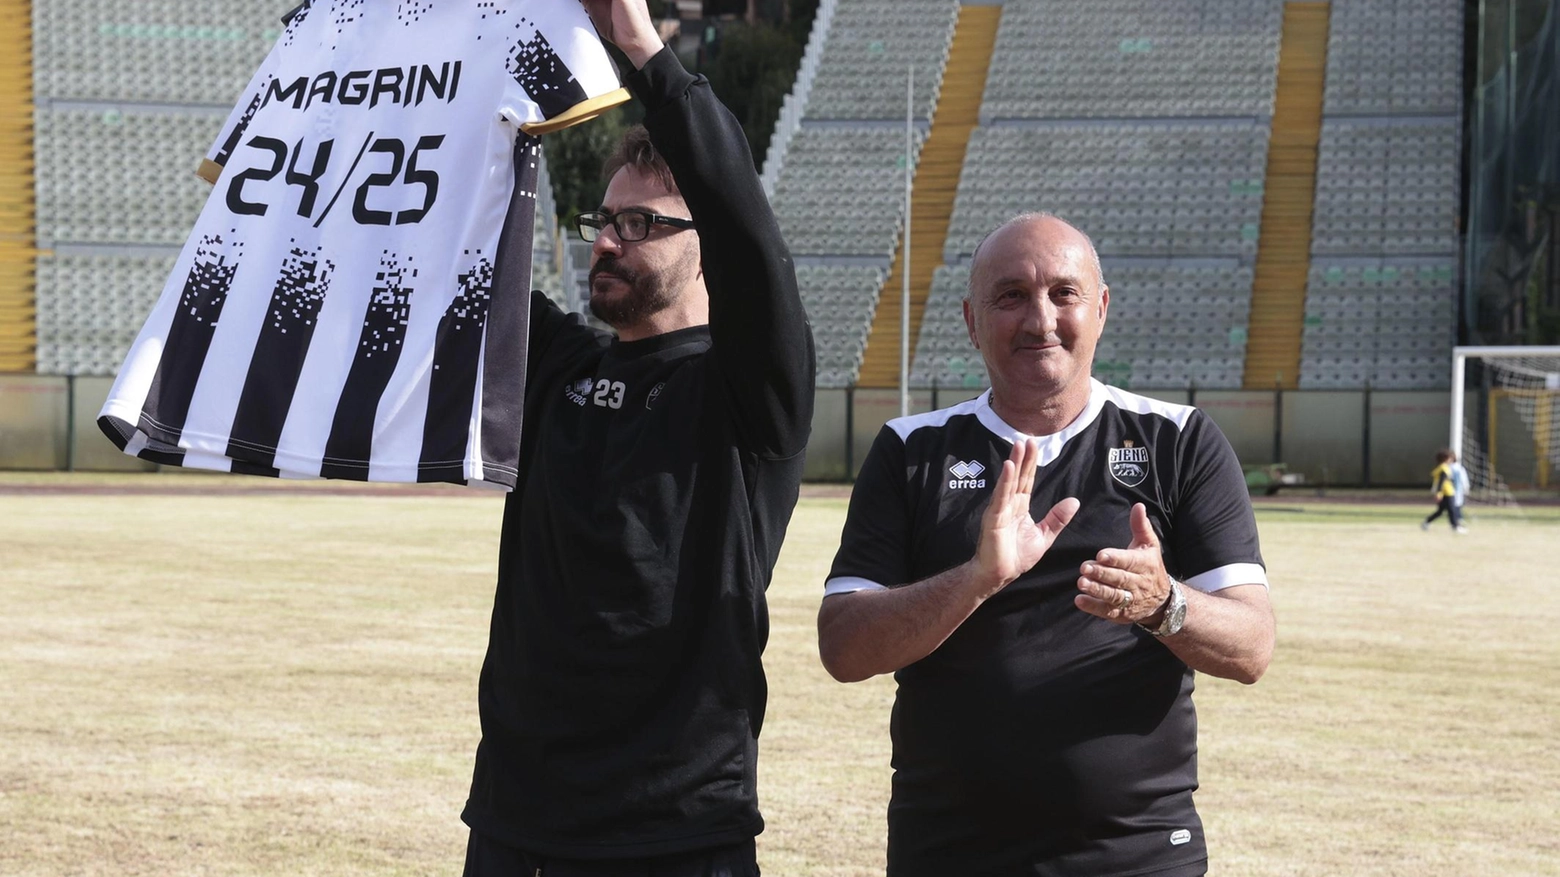 L’allenatore Magrini ‘scarta’ il regalo più bello: "Non ho mai avuto dubbi di restare al Siena"